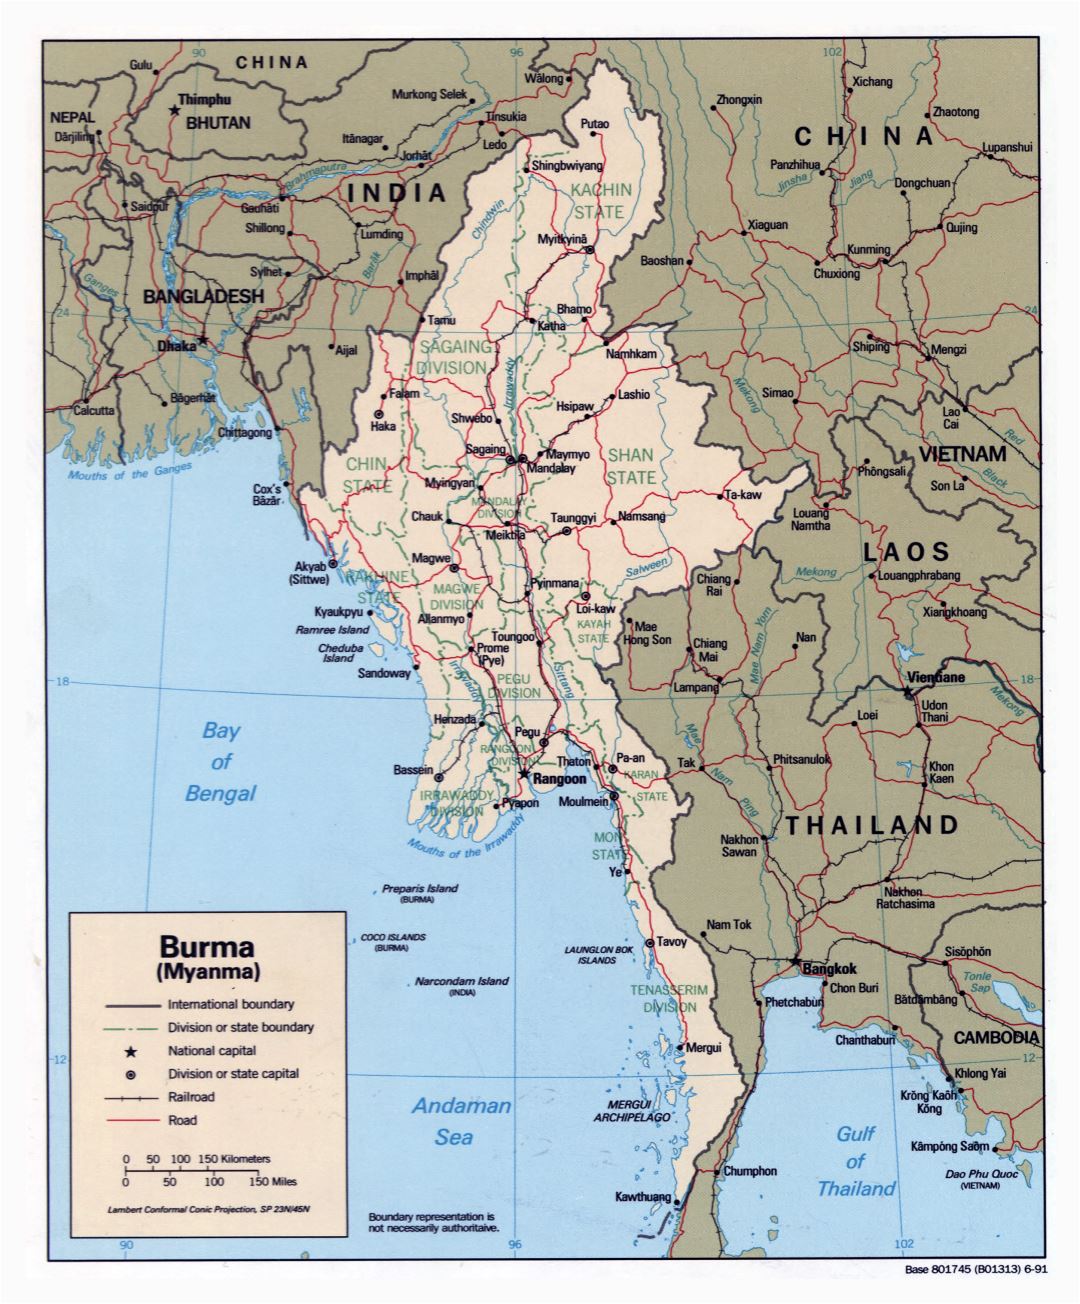 Grande detallado mapa político y administrativo de Birmania (Myanmar) con carreteras, ferrocarriles y principales ciudades - 1991